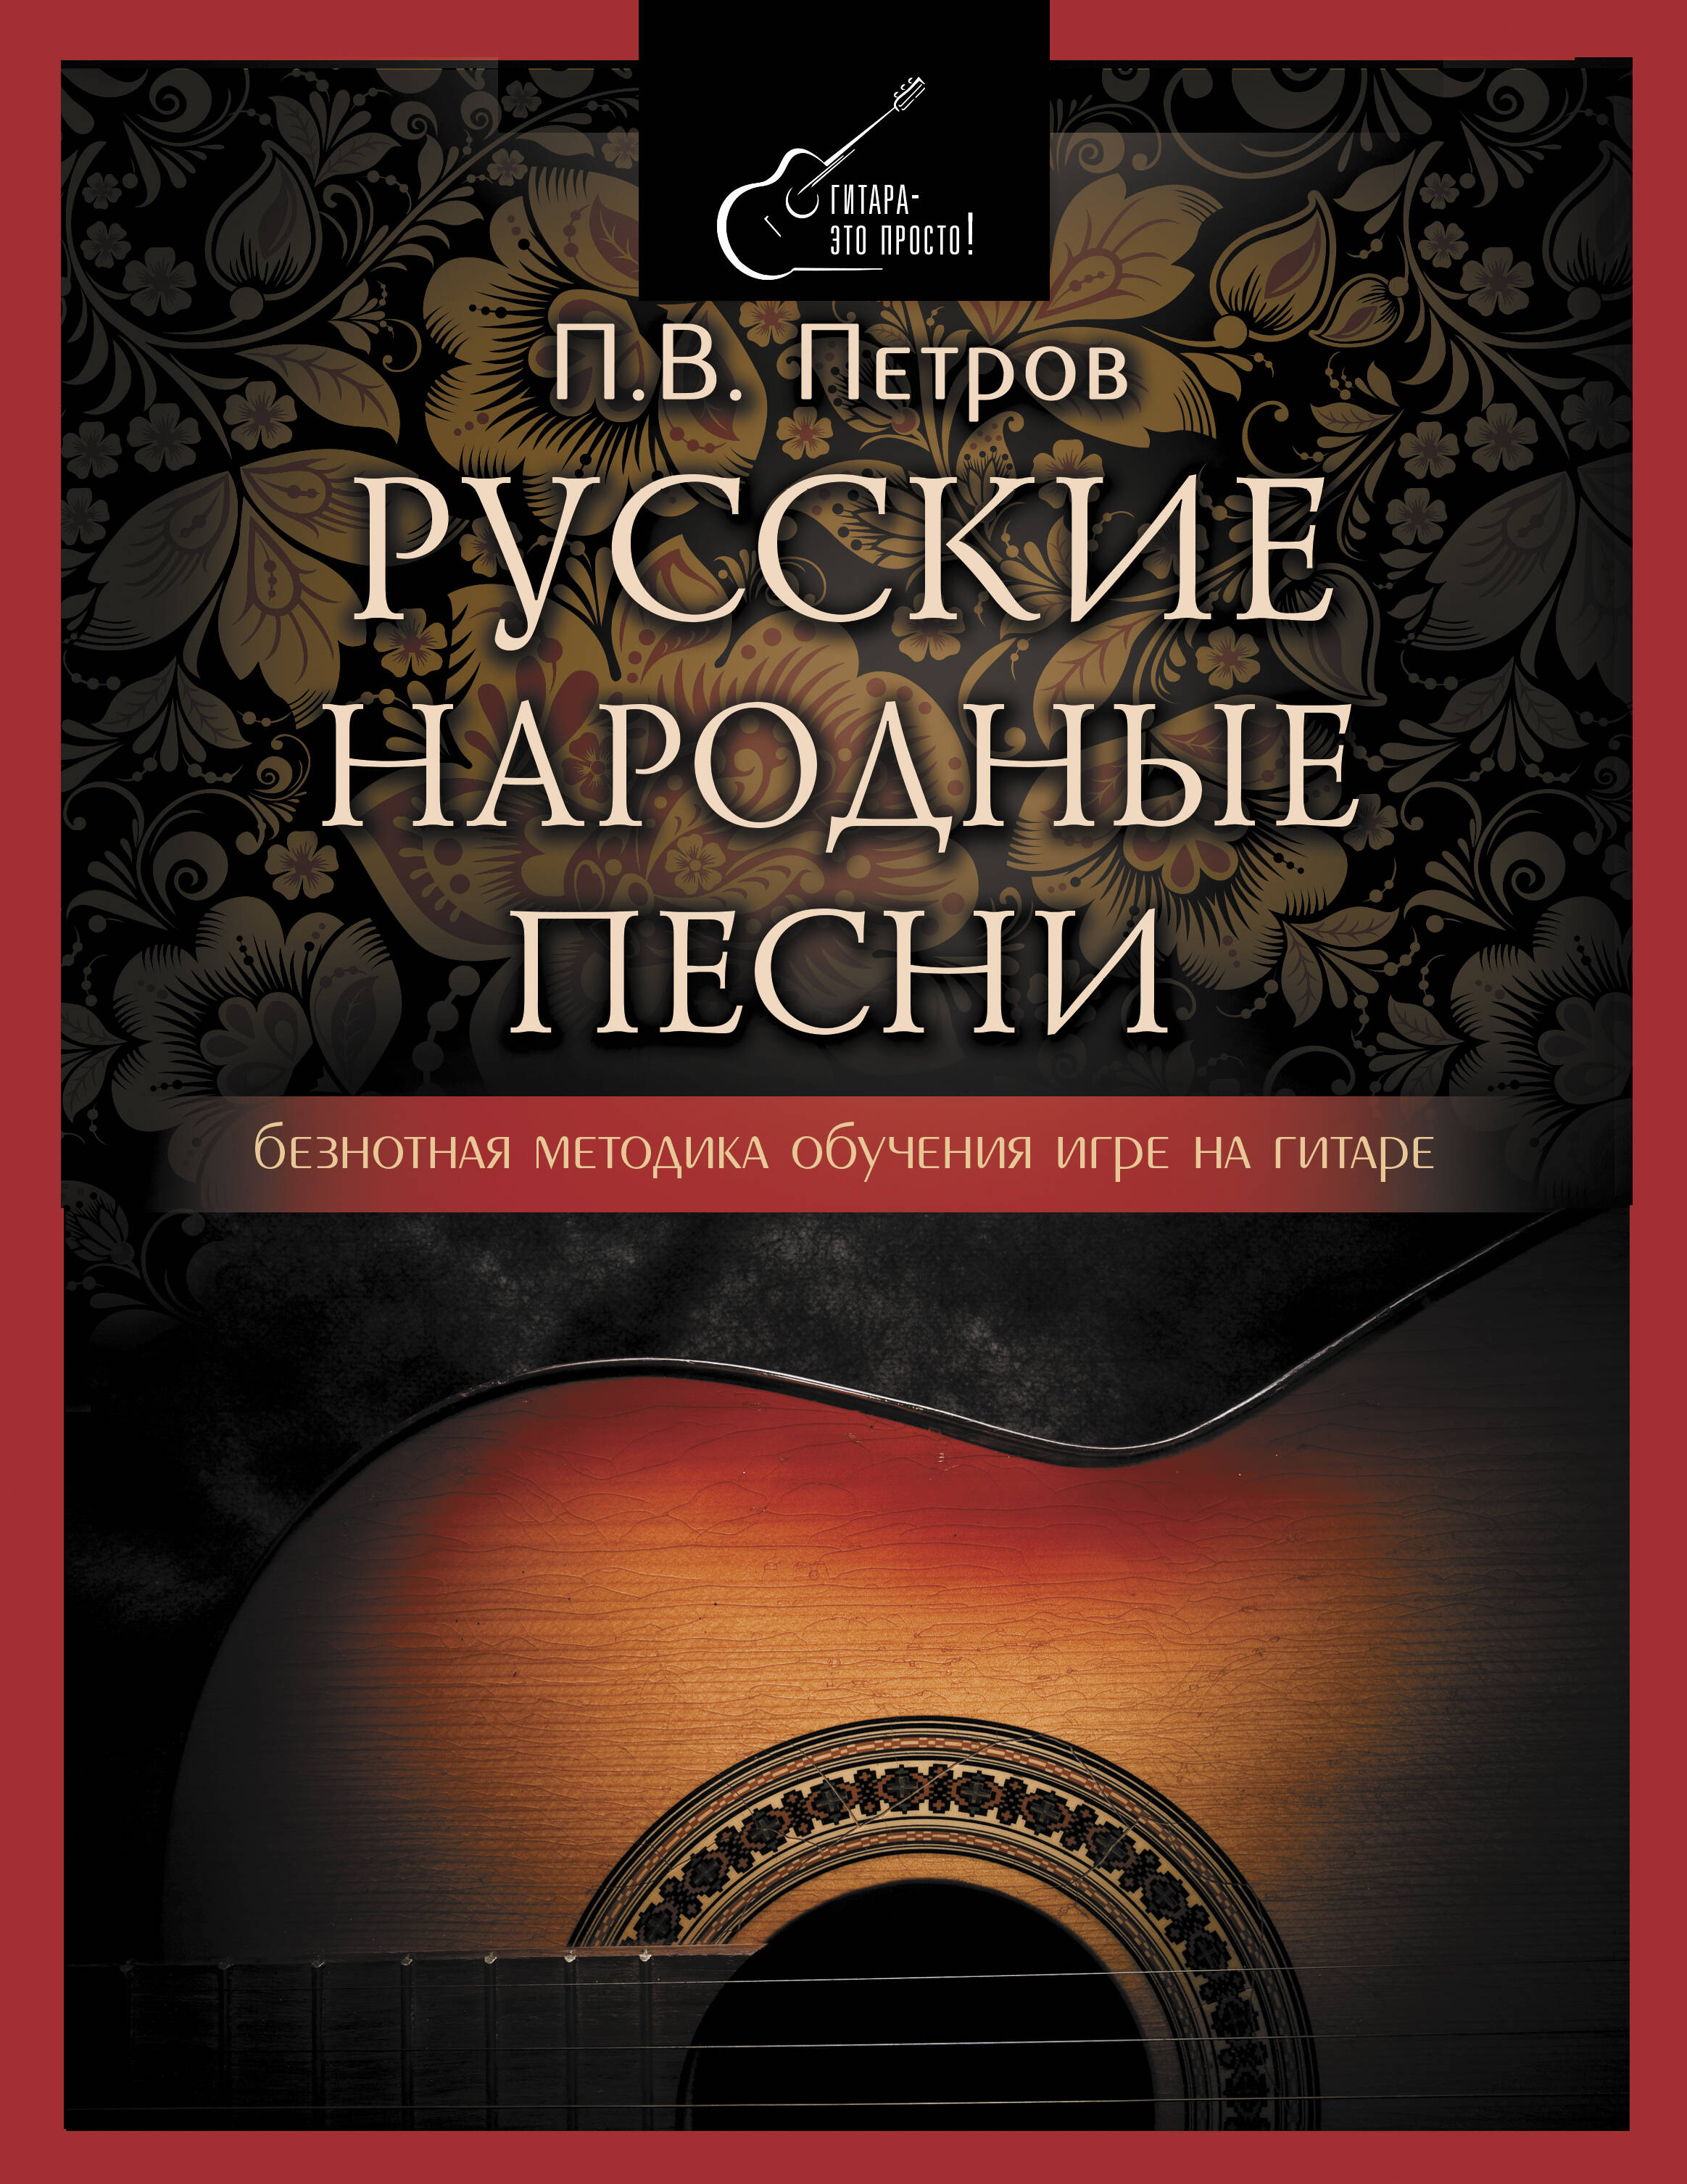 петров павел владимирович аккорды на гитаре 8 уроков для начинающих Петров Павел Владимирович Русские народные песни. Безнотная методика обучения игре на гитаре